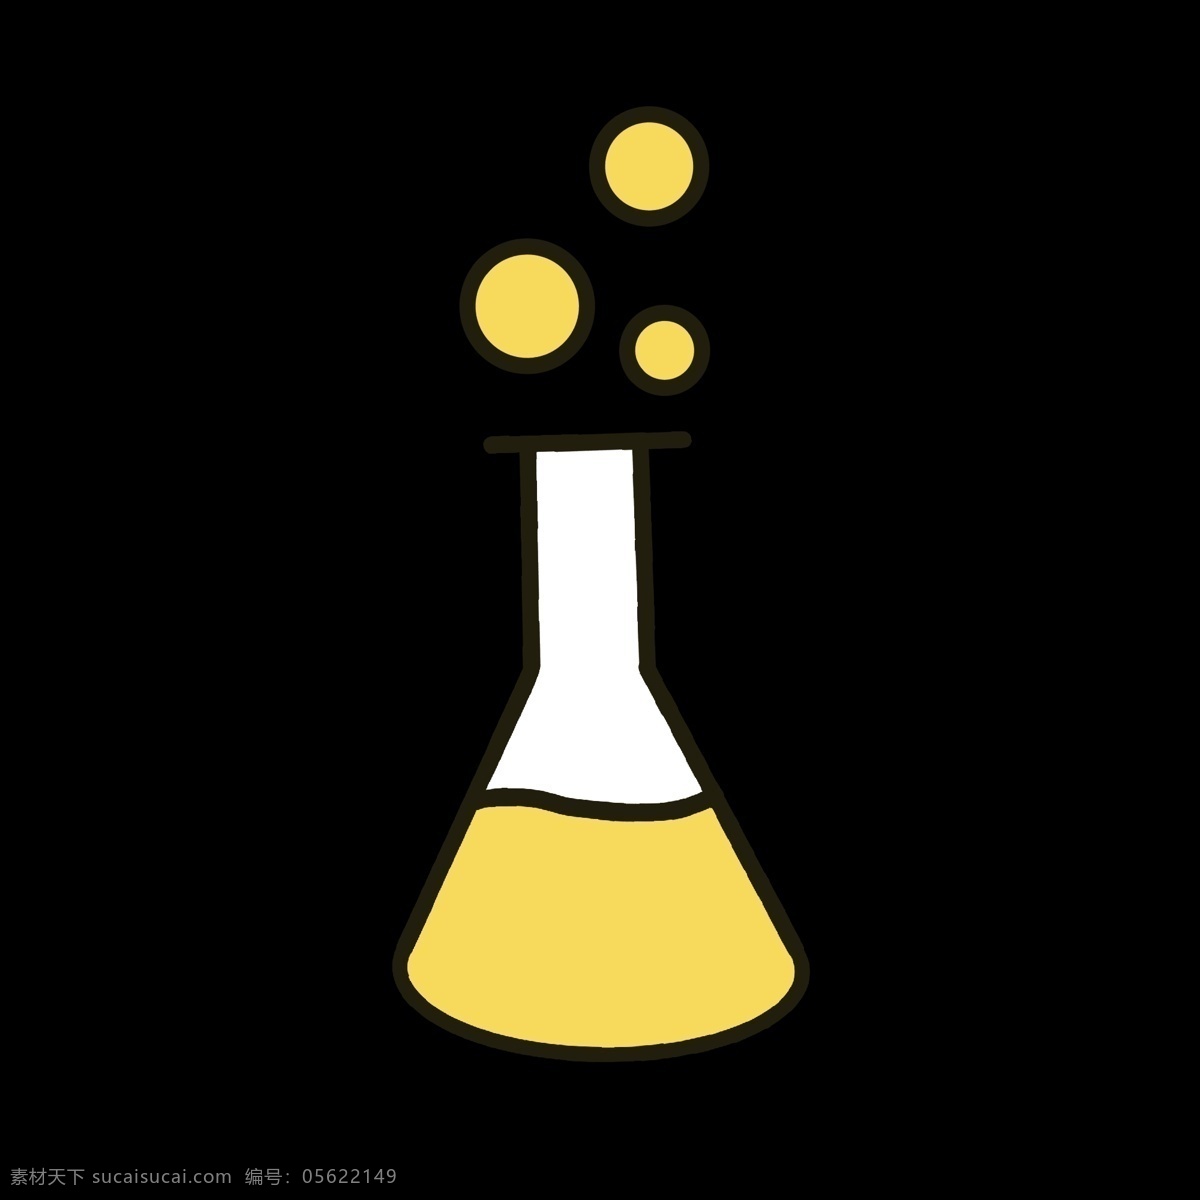 黄色 化学实验 器皿 实验室 冒泡 化学分子 运动 活动 分解 标识 学习化学内容 知识 科学 认知 水平 教育程度 理念